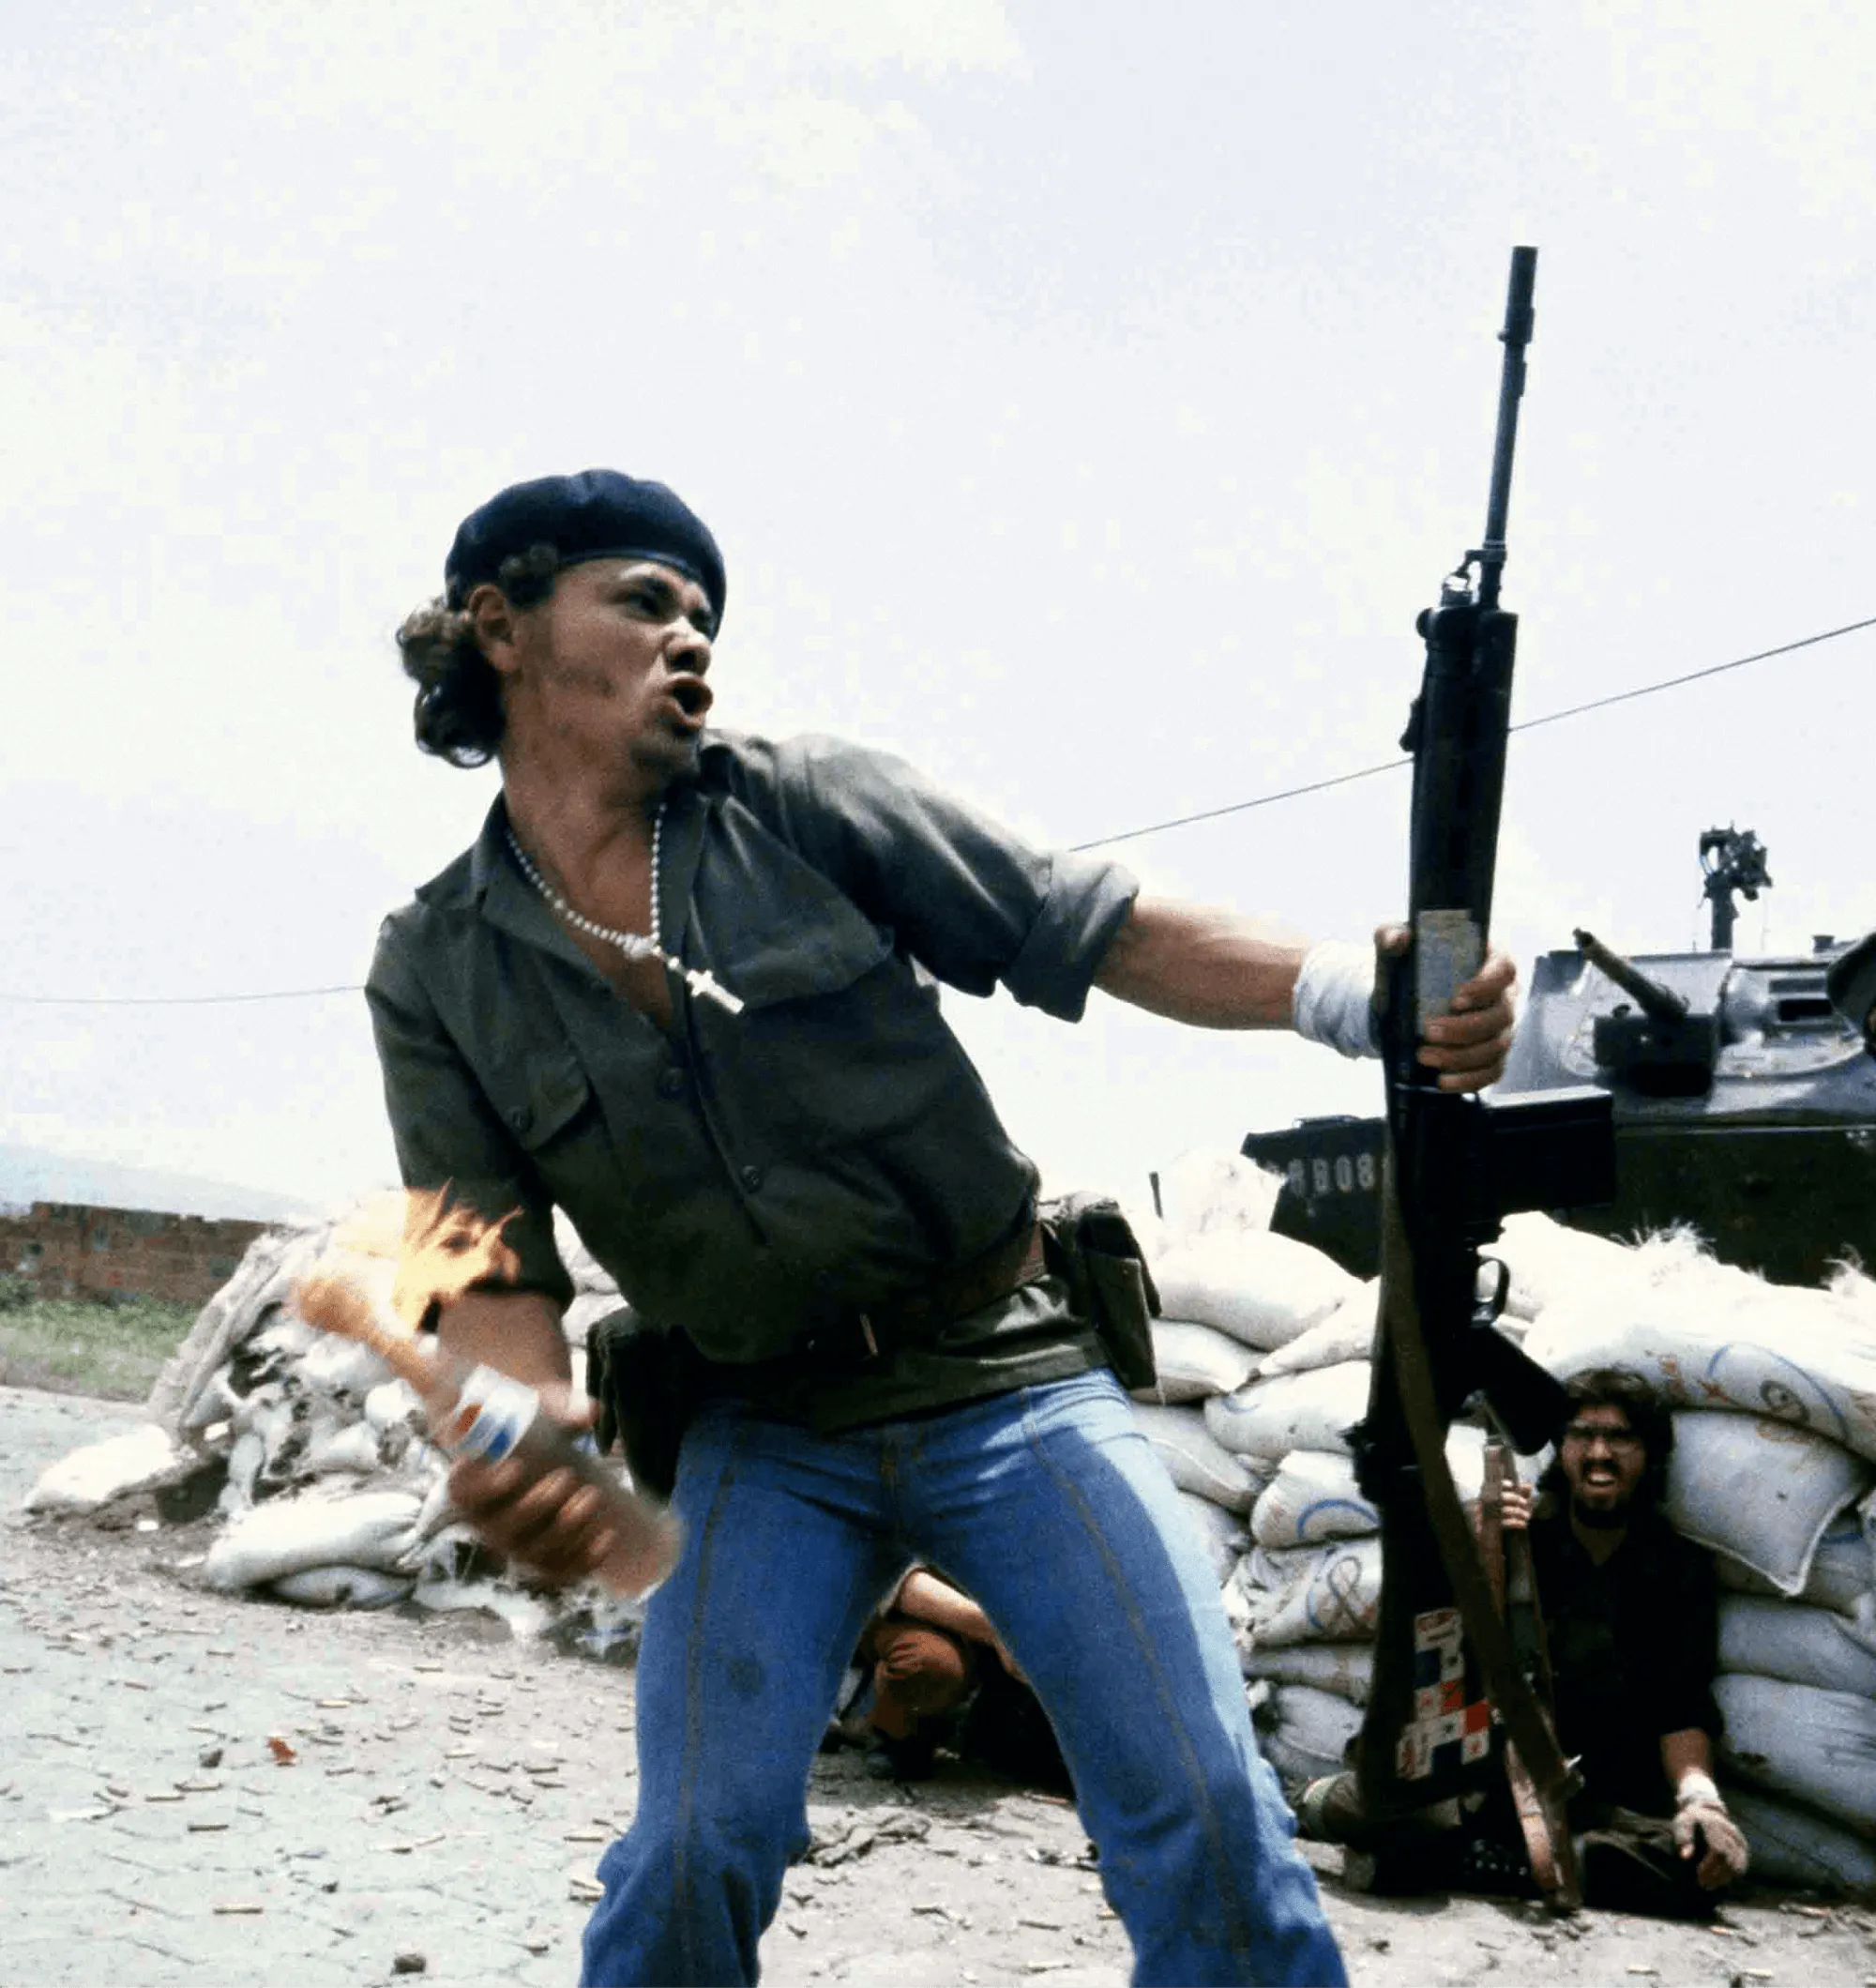 Susan Meiselas, Molotov Man, 16 juillet 1979, photographie (détail)